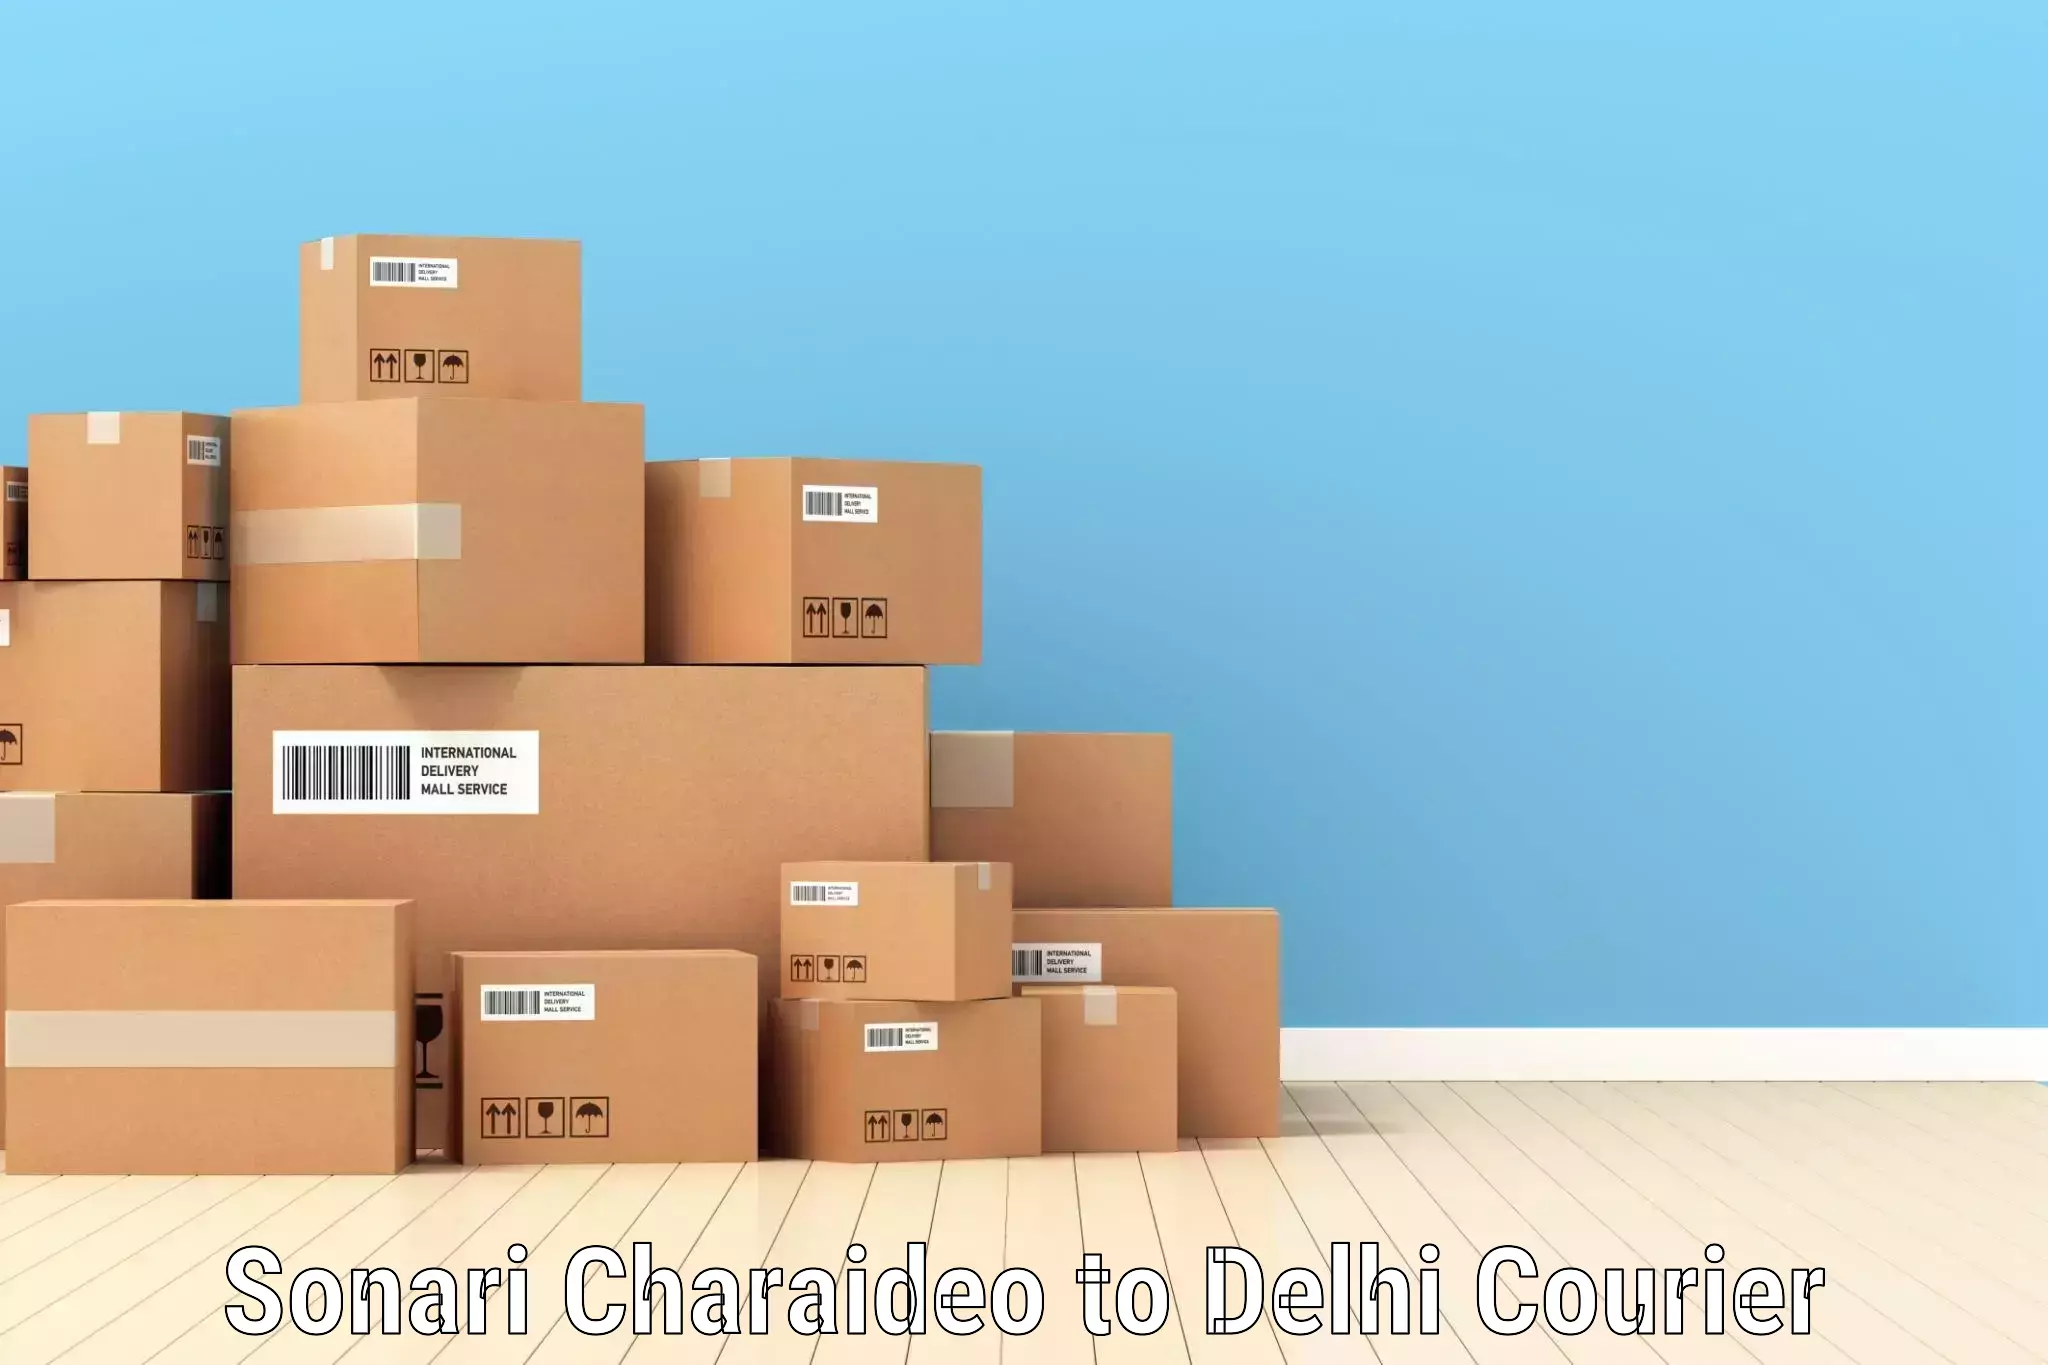 Local delivery service Sonari Charaideo to Delhi